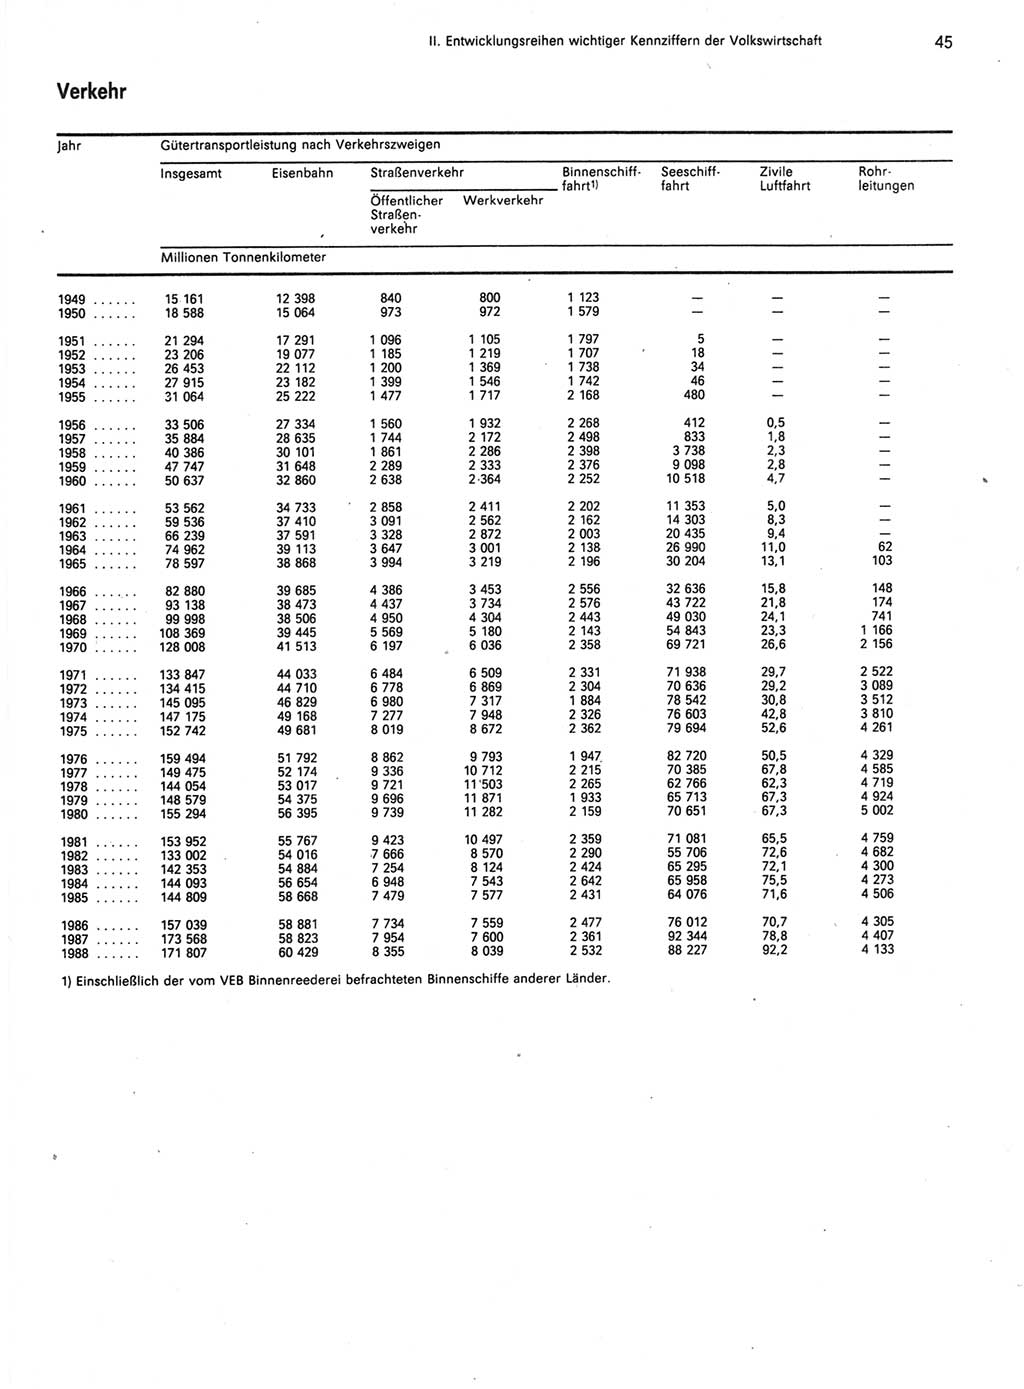 Statistisches Jahrbuch der Deutschen Demokratischen Republik (DDR) 1989, Seite 45 (Stat. Jb. DDR 1989, S. 45)